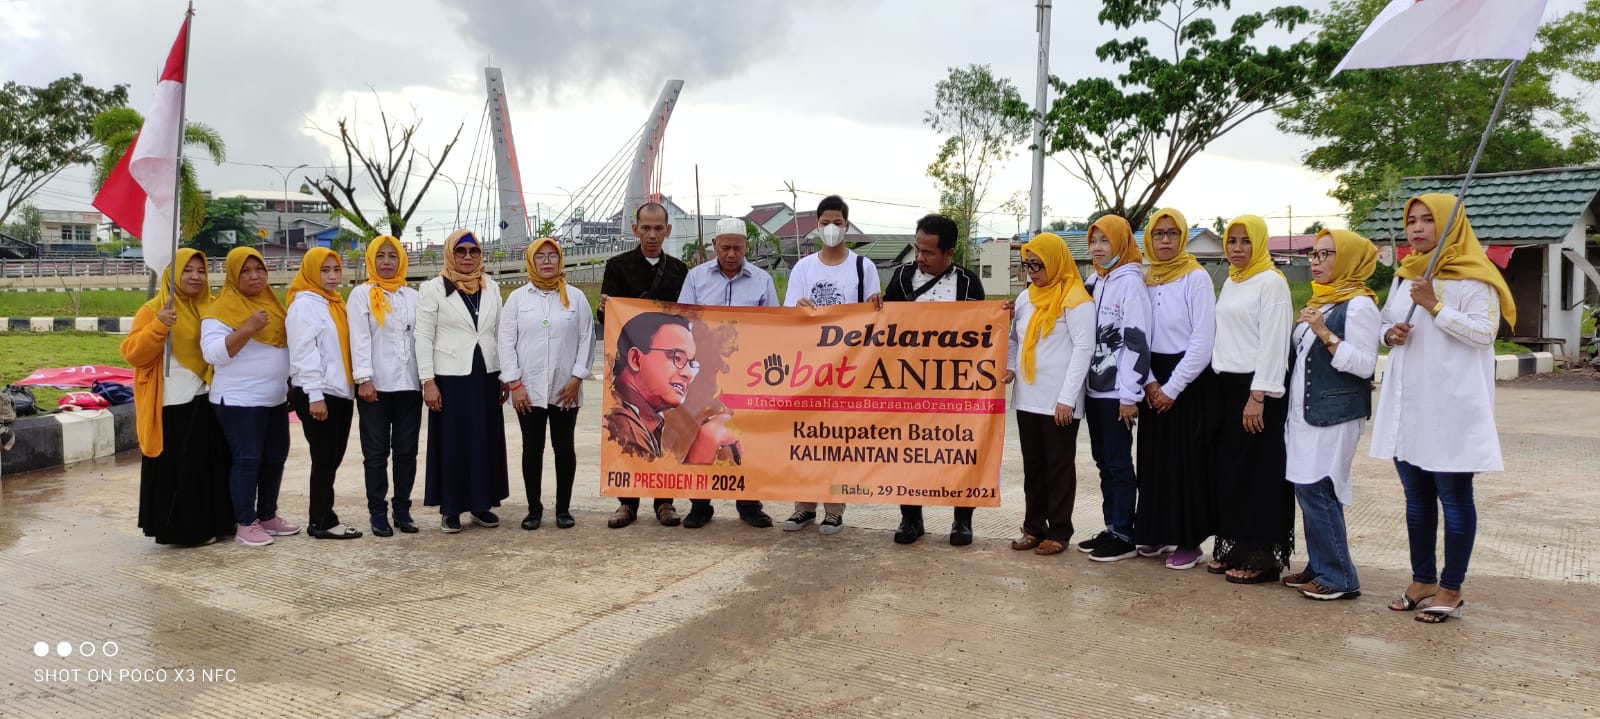 Deklarasi Sobat Anies Kabupaten Barito Kuala. (Foto: Katajari.com)